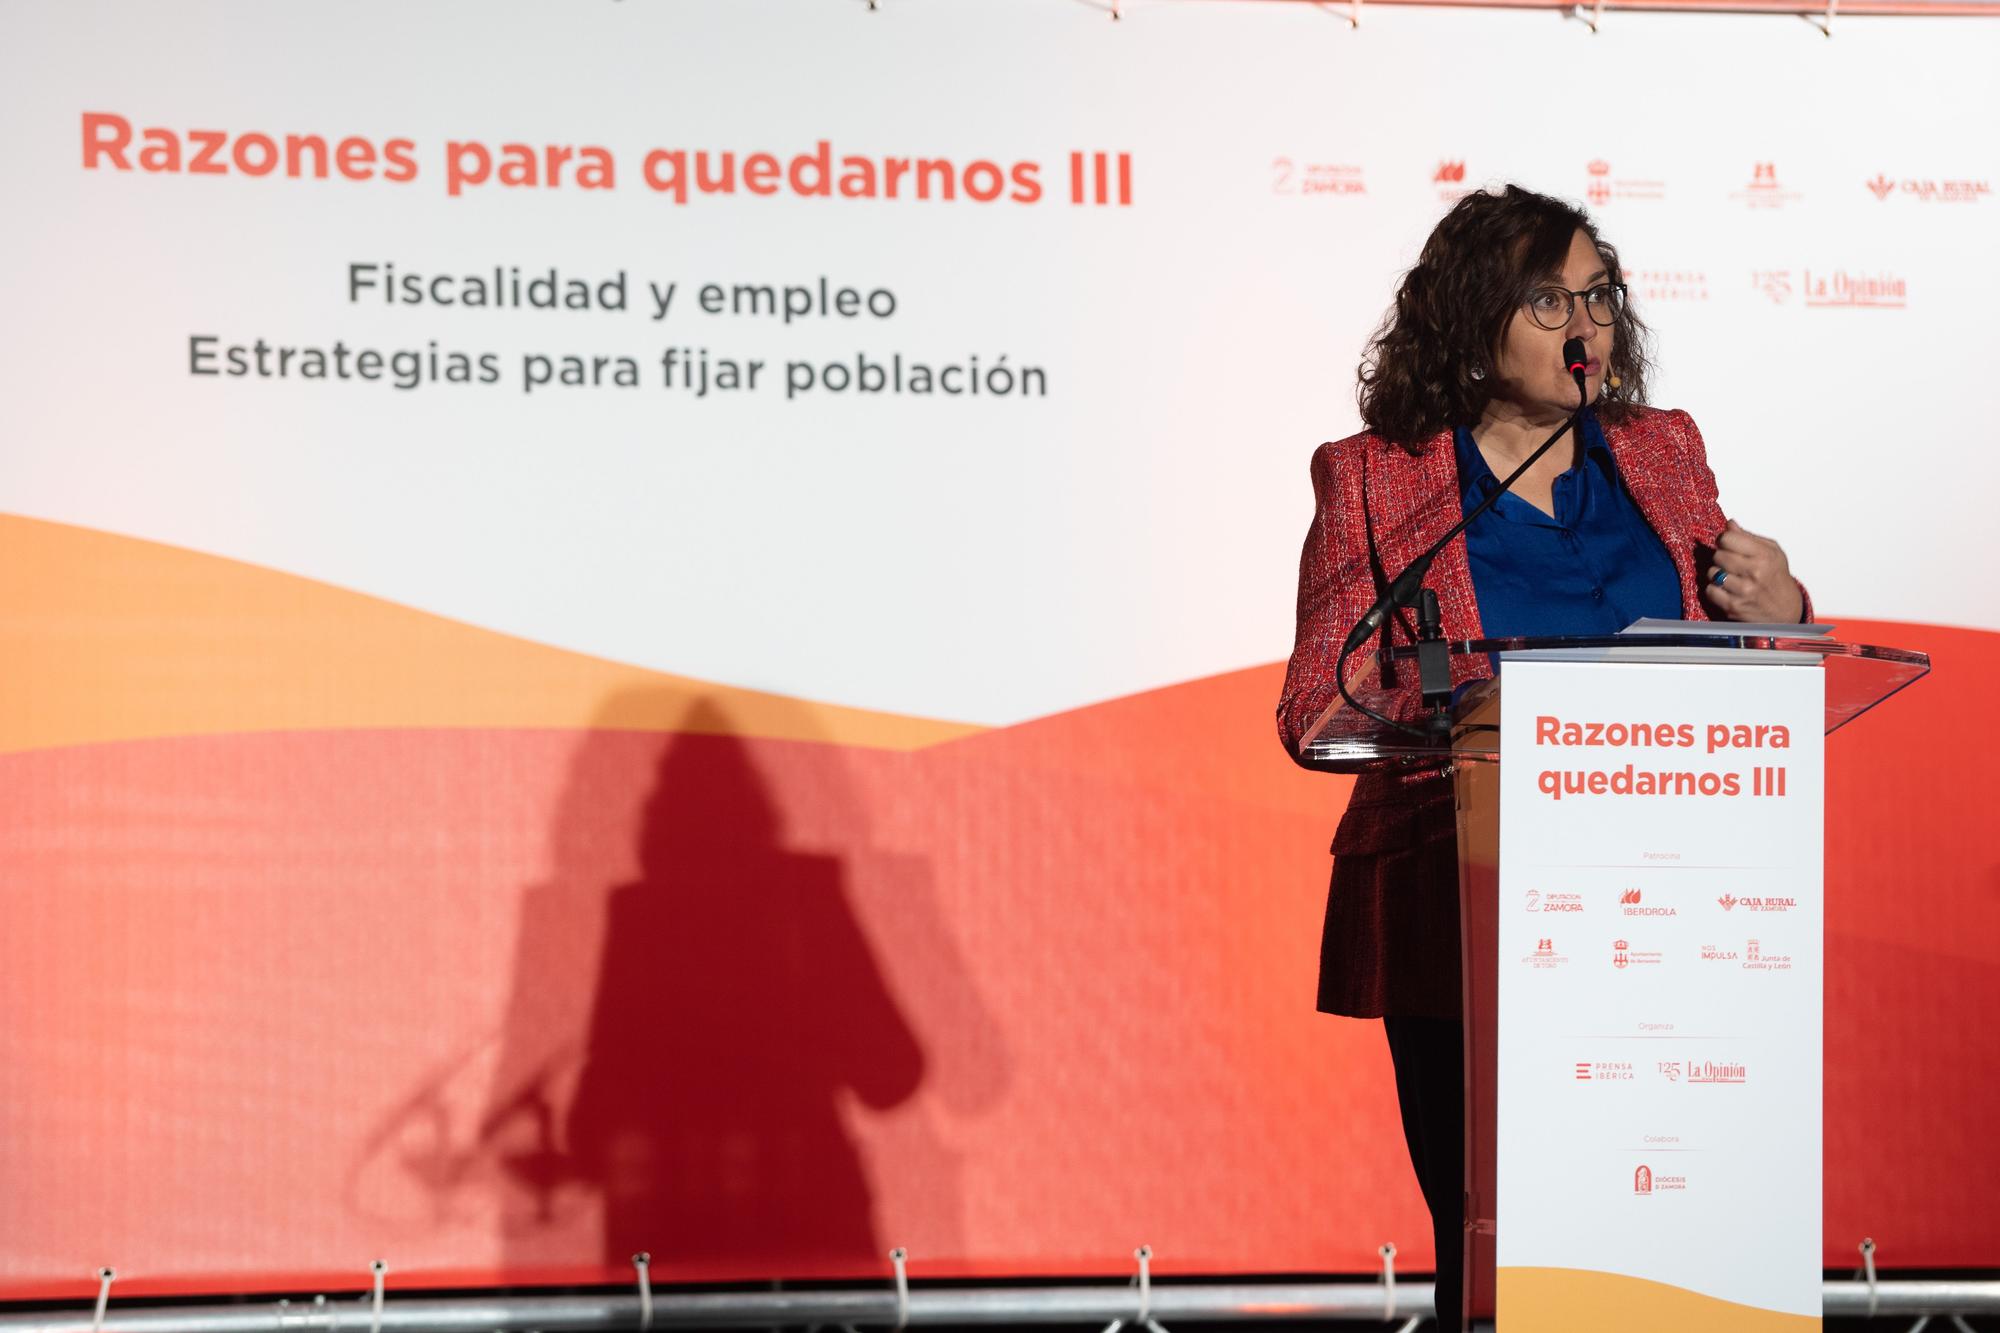 GALERÍA | Las mejores imágenes del III congreso en Zamora "Razones para quedarnos"